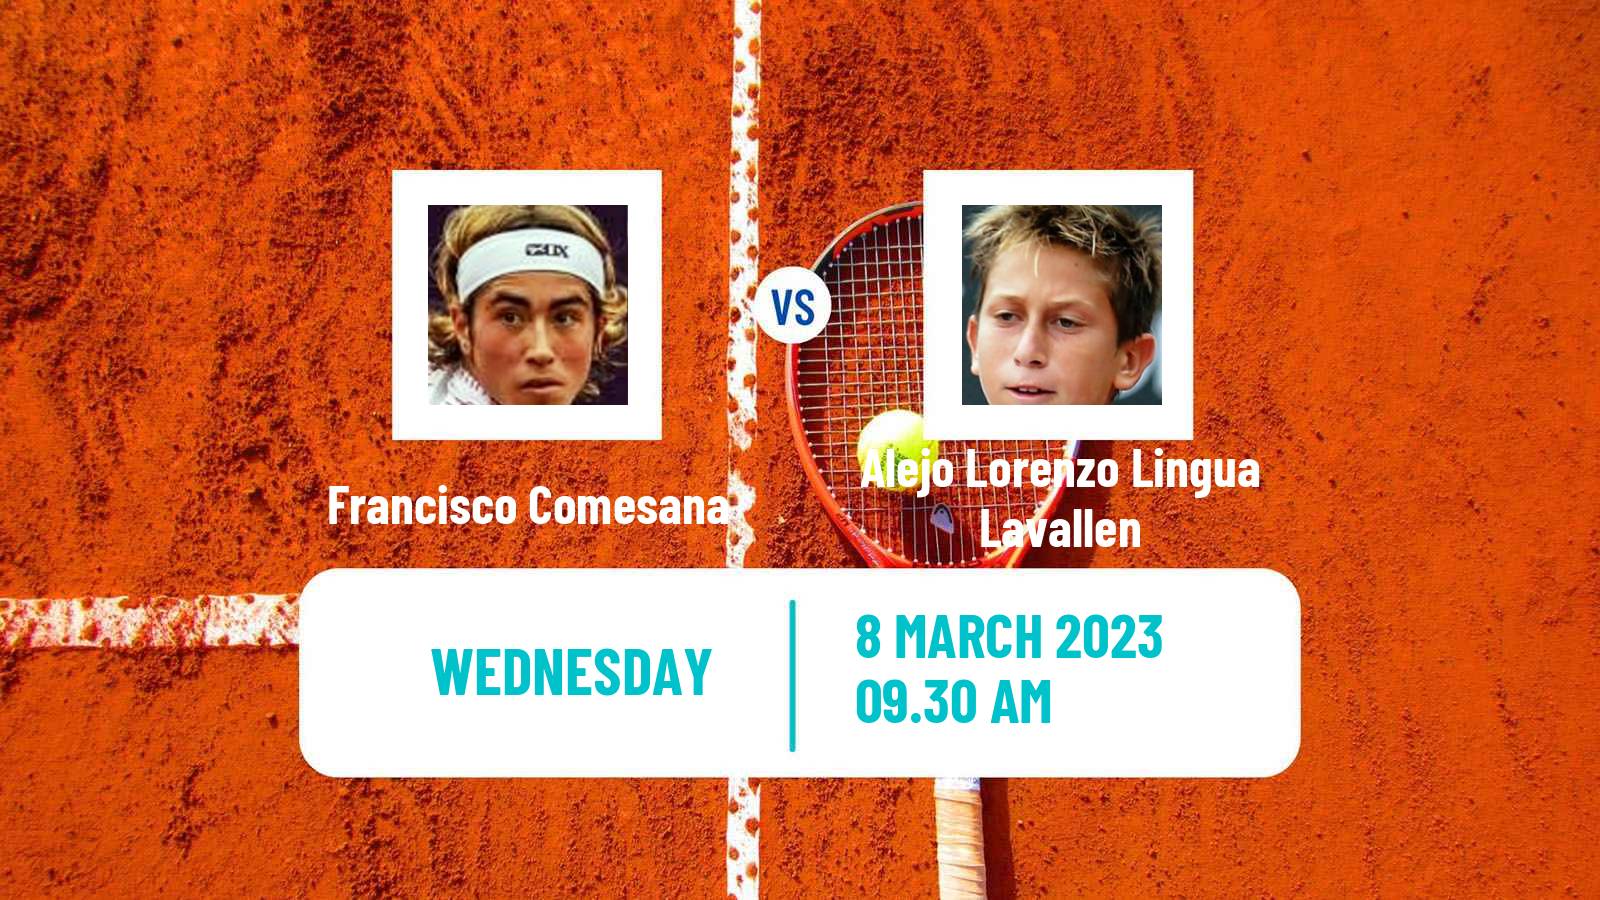 Tennis ITF Tournaments Francisco Comesana - Alejo Lorenzo Lingua Lavallen